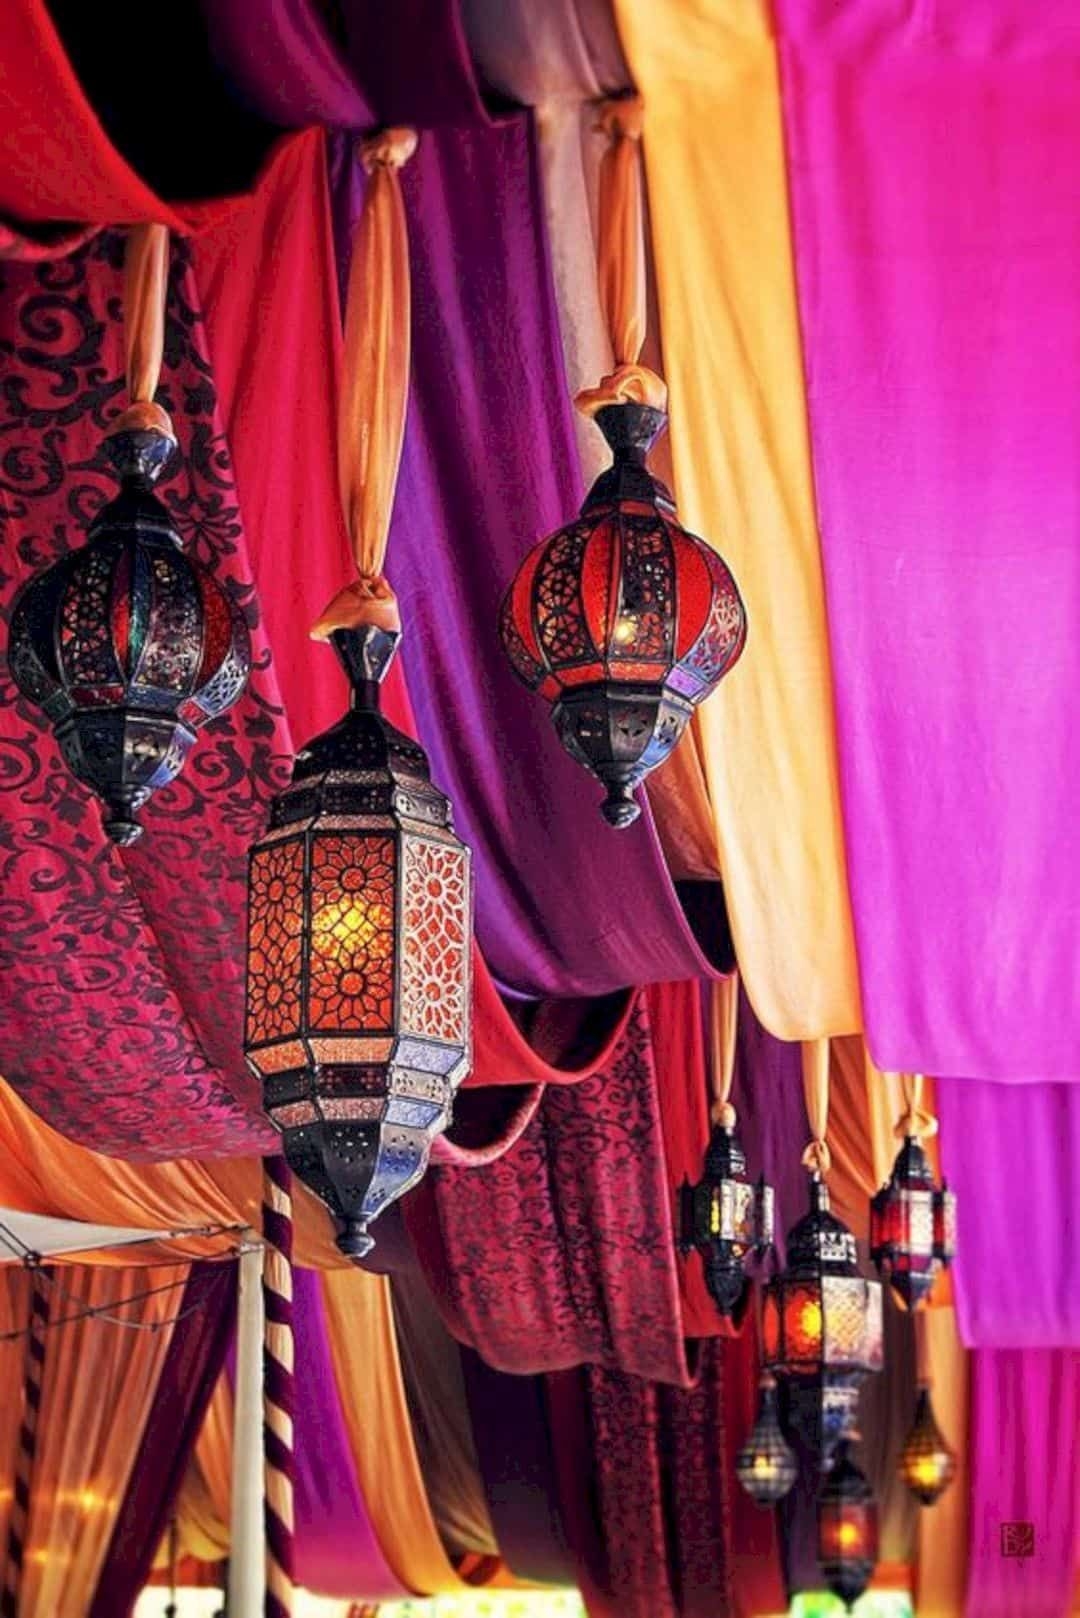 Moroccan hanging lanterns